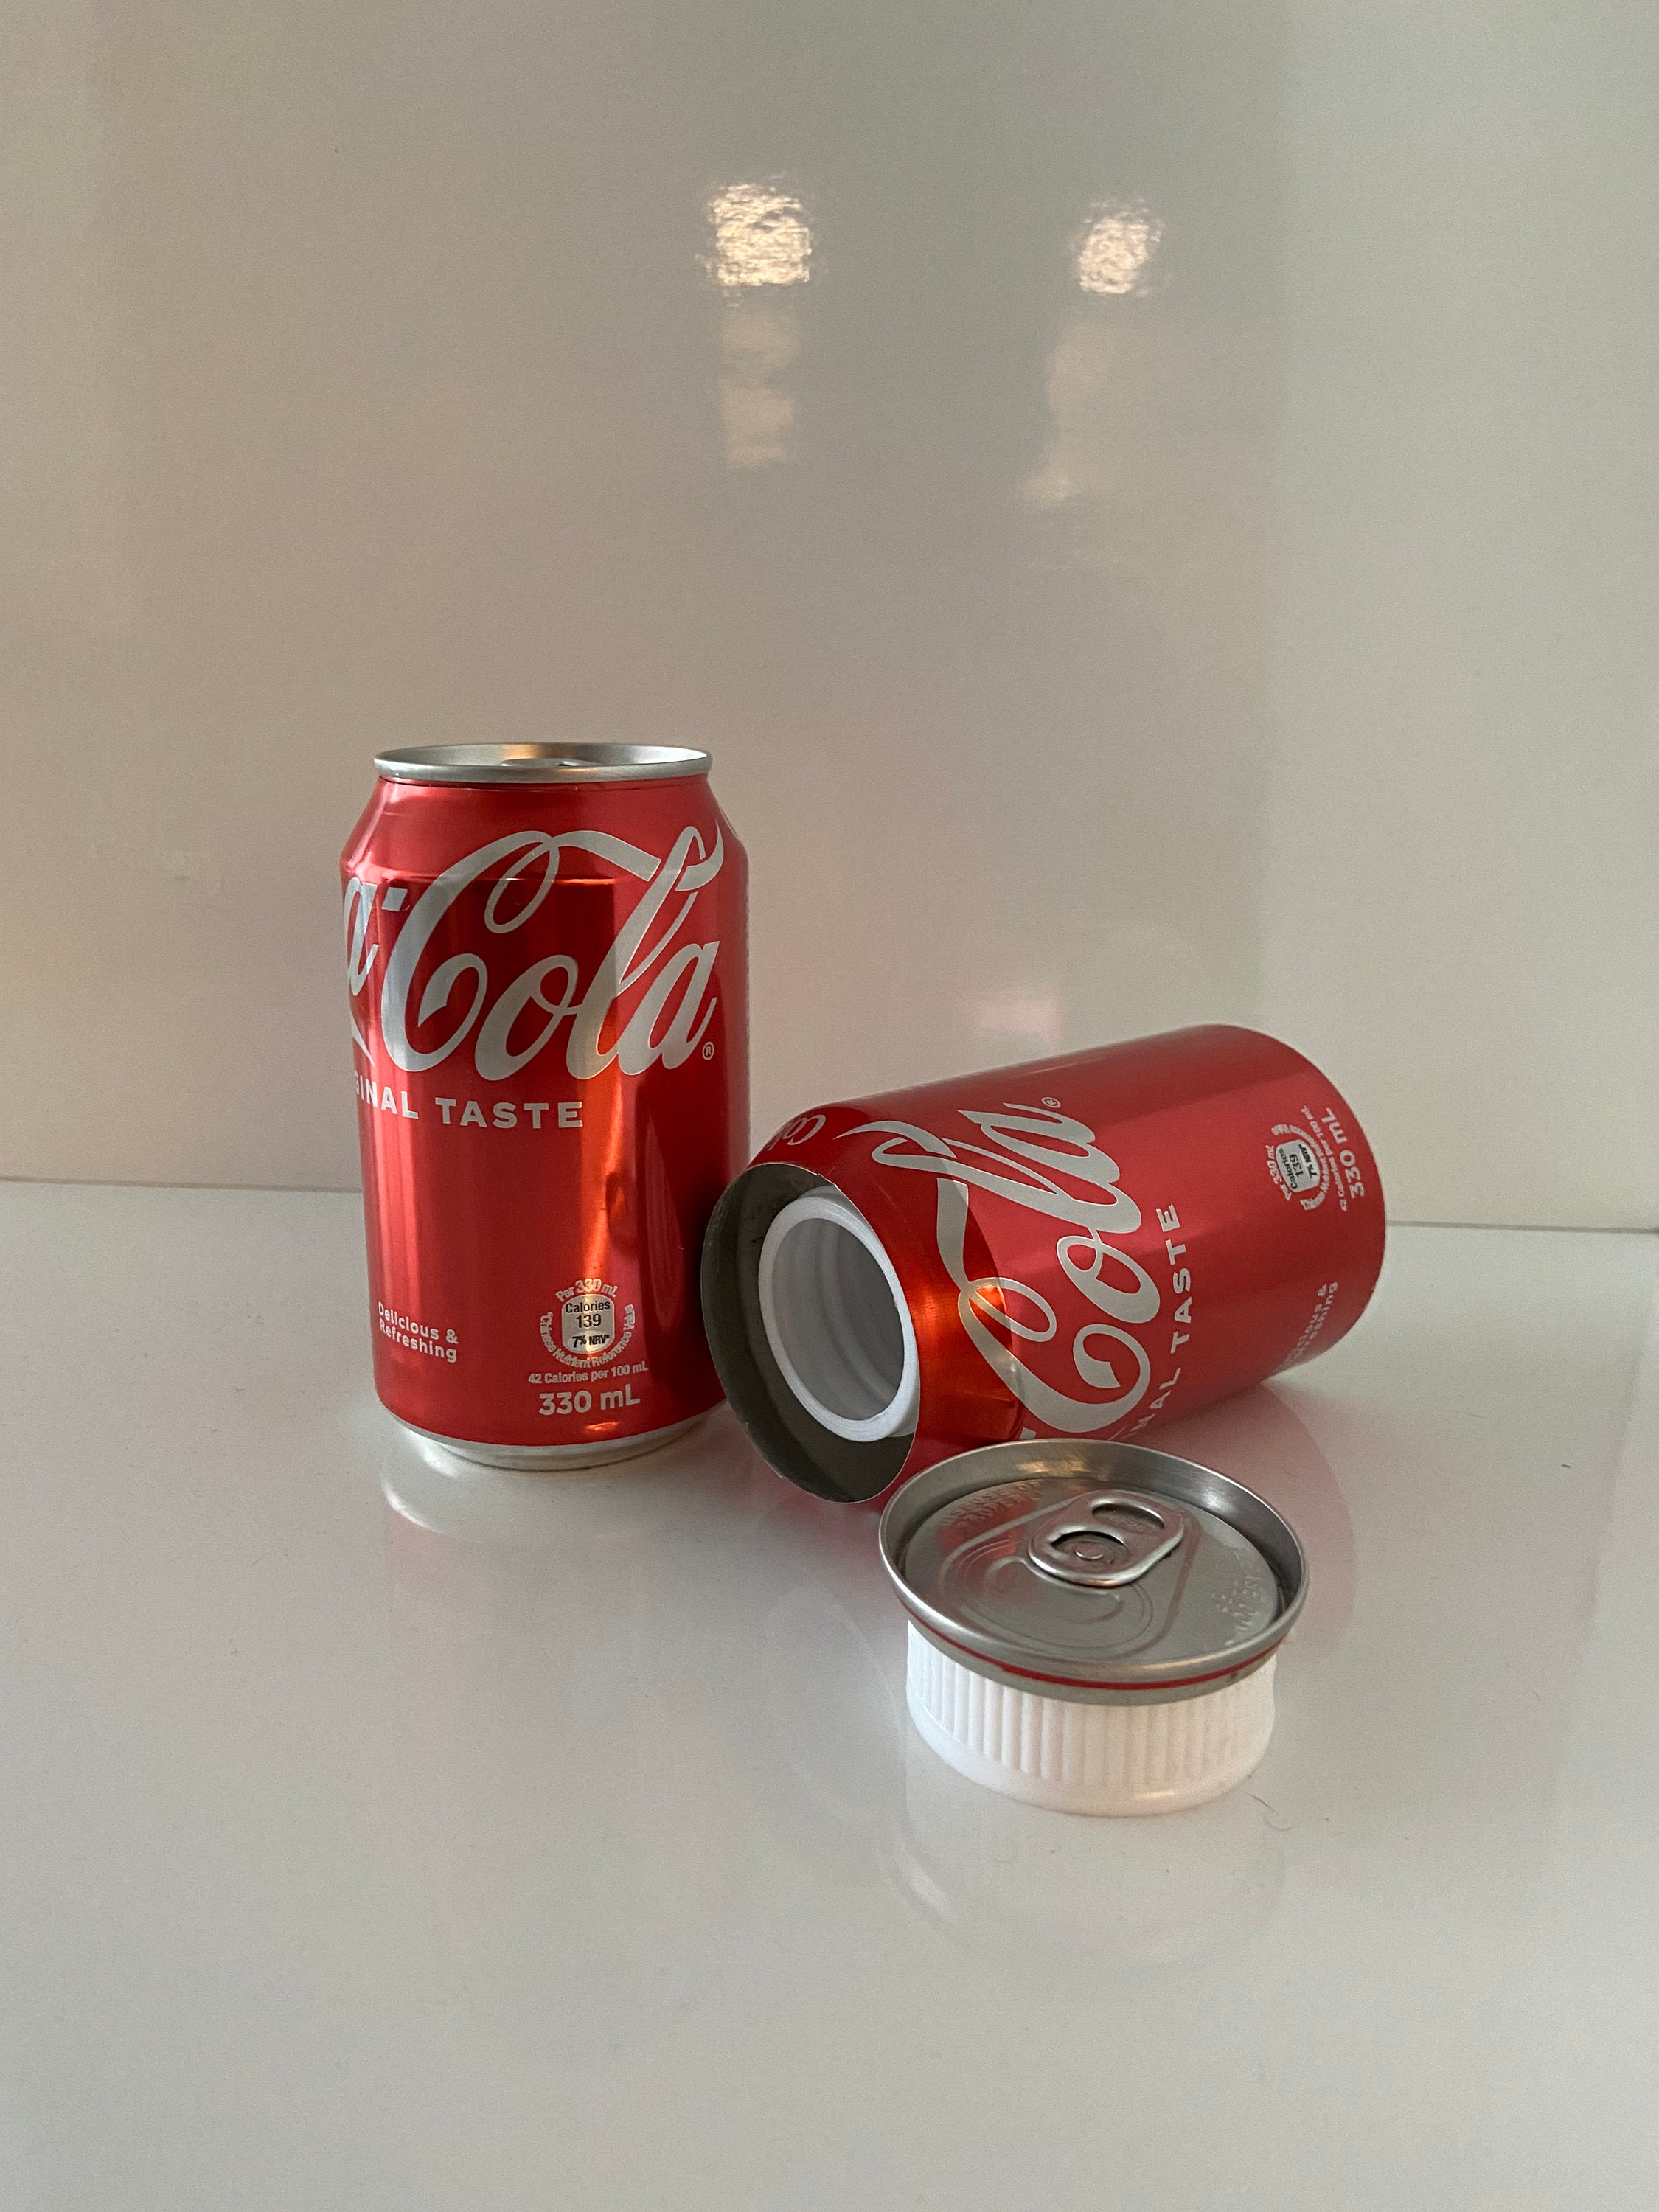 Canette cachette secrète Coca-Cola